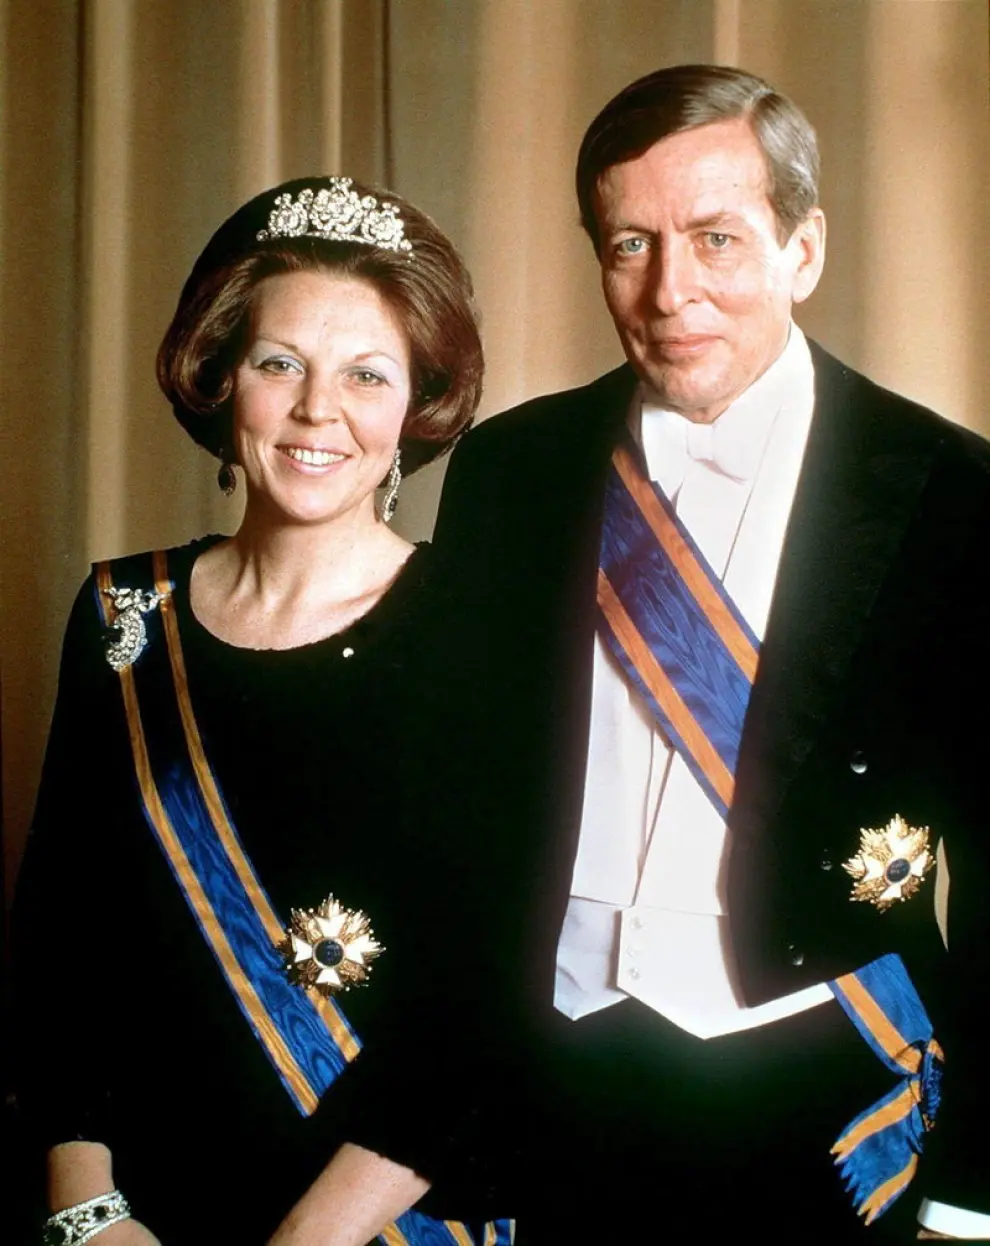 La reina Beatriz de Holanda ha abdicado en favor del príncipe Guillermo.